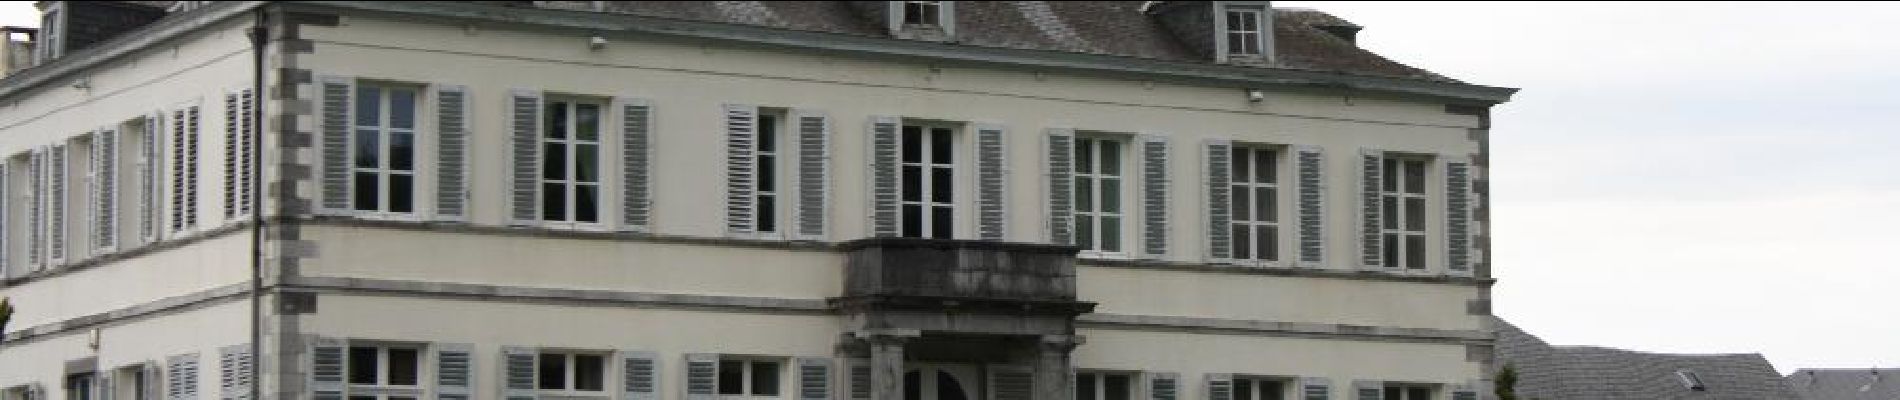 POI Assesse - Château de Sorinne-la-Longue - Photo